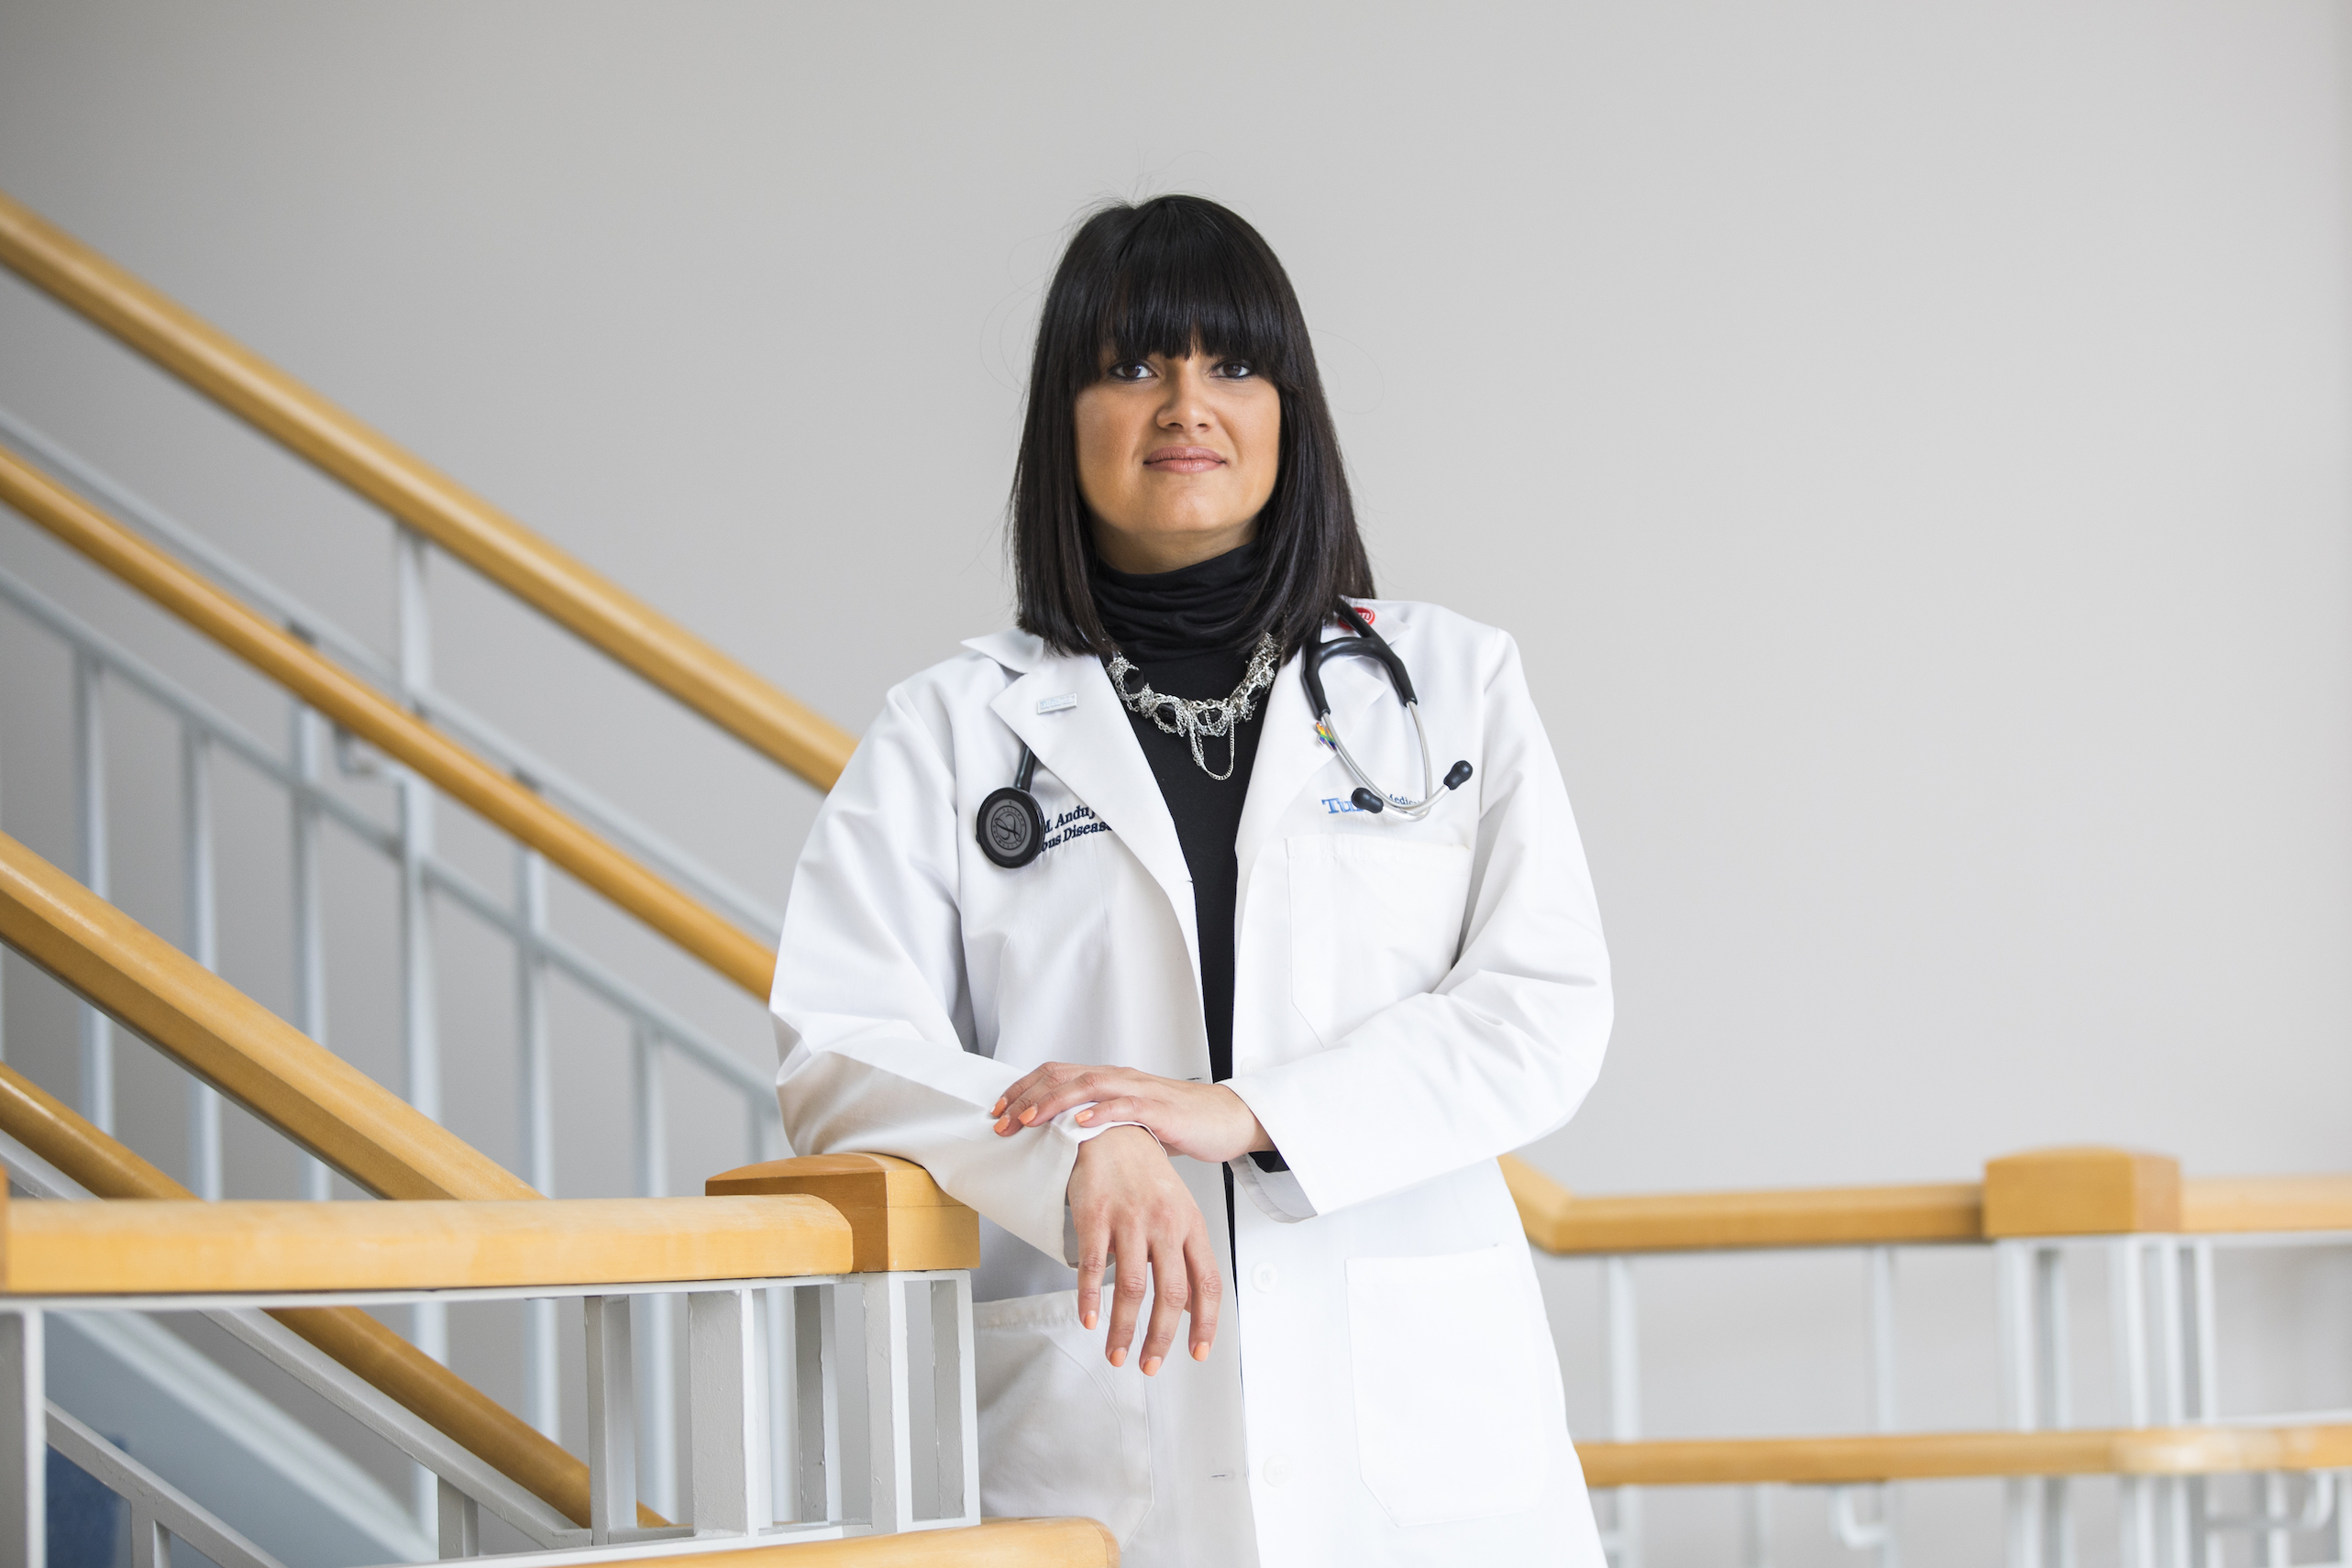 Dr. Gabriela M. Andujar Vazquez